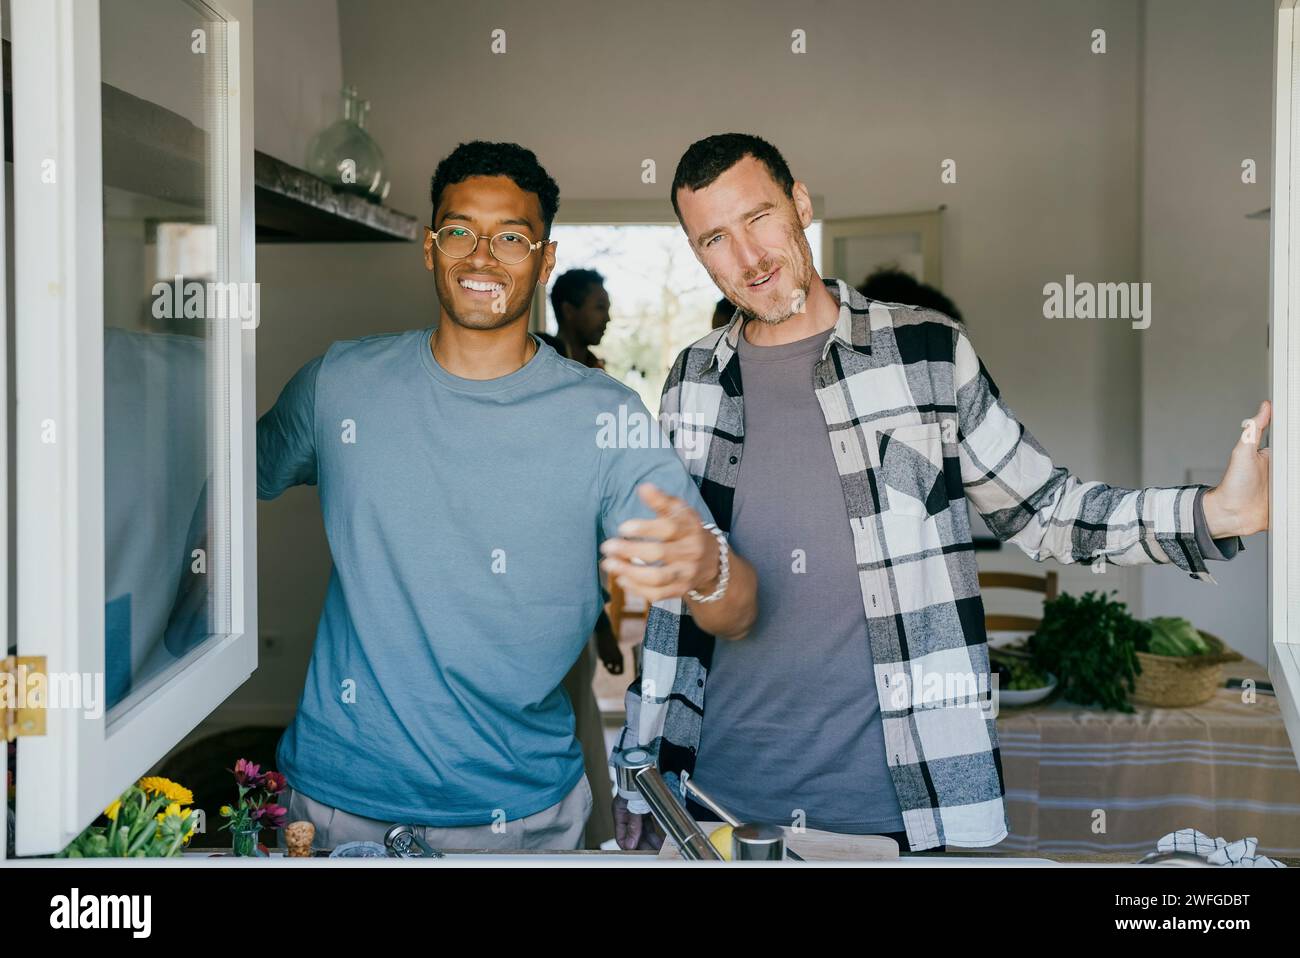 Porträt lächelnder männlicher Freunde, die in der Küche stehen, durch das Fenster gesehen Stockfoto